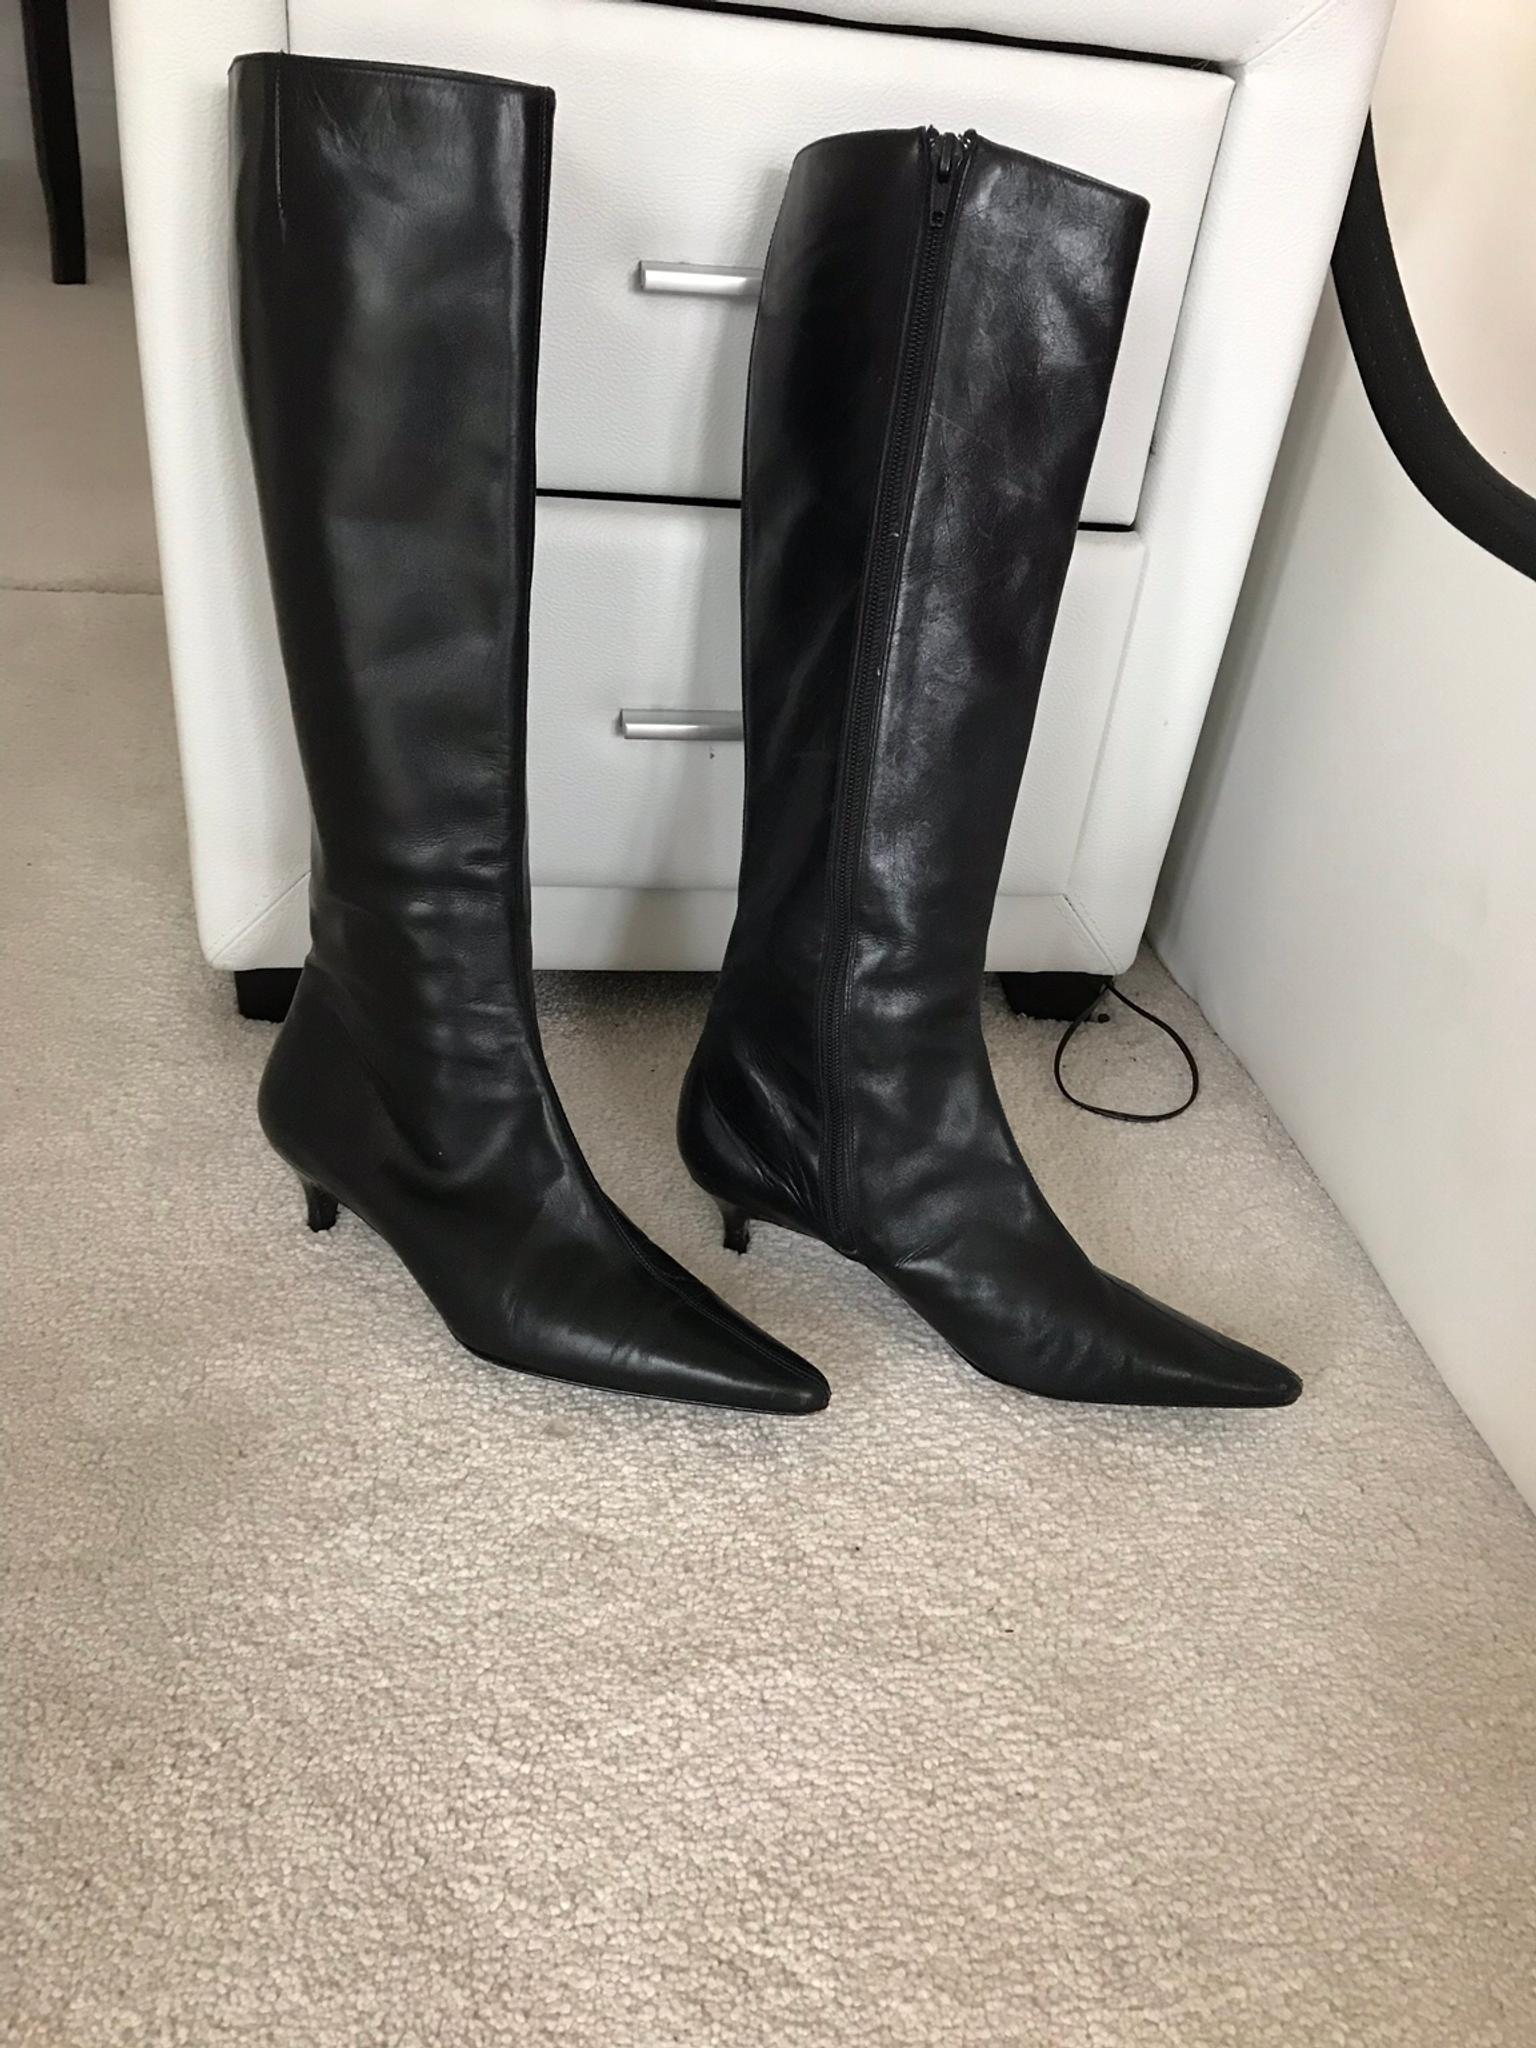 kitten heel knee high leather boots